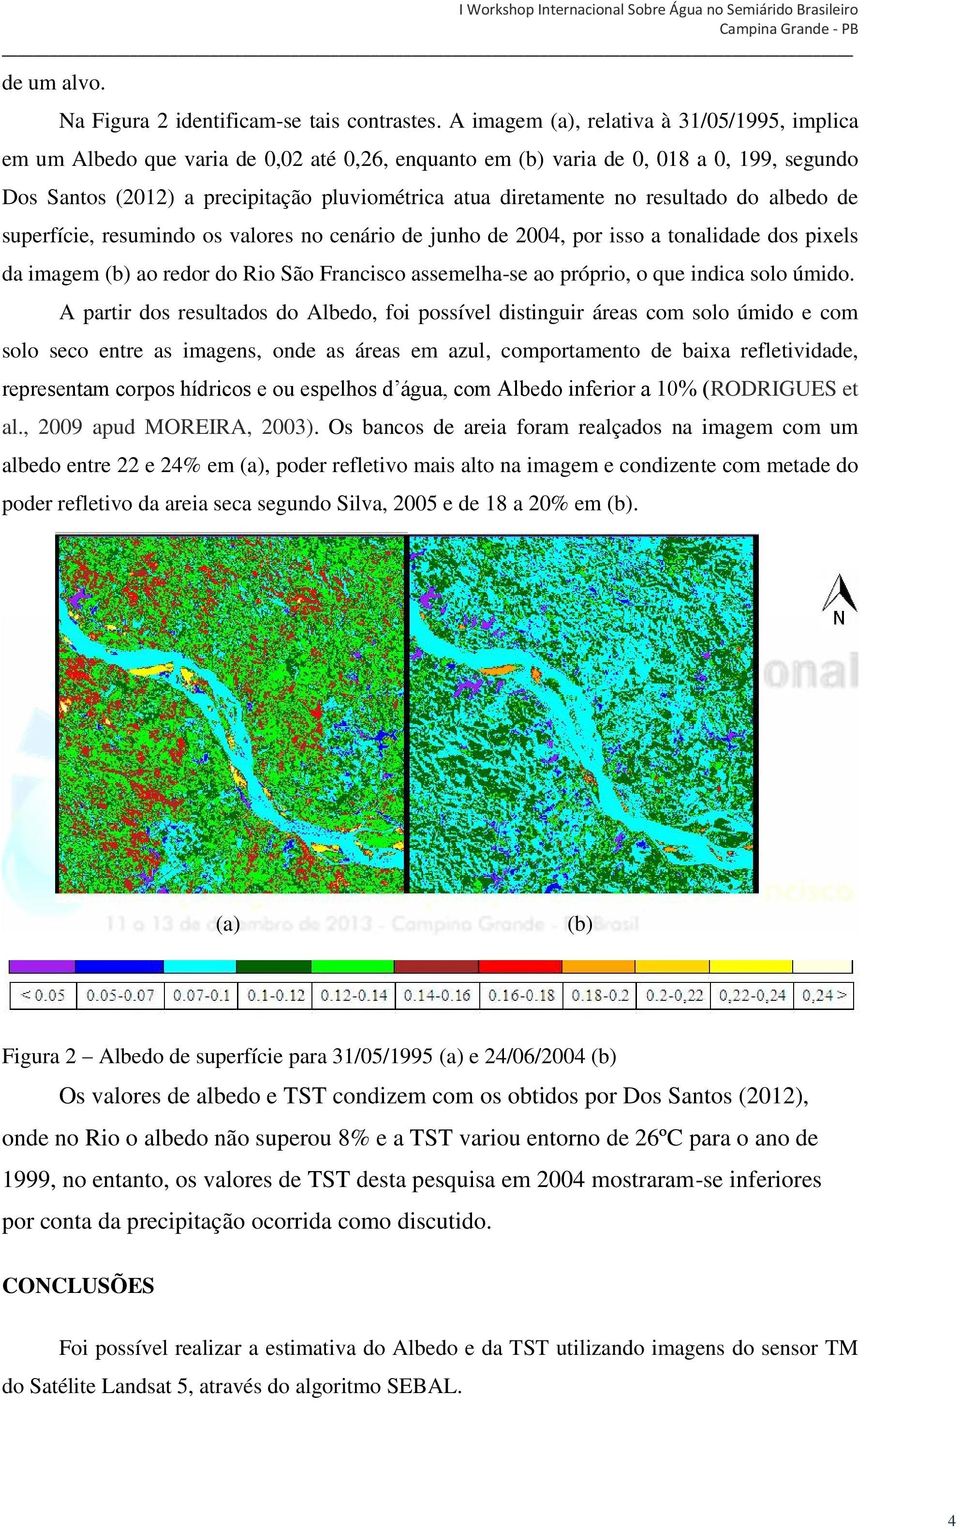 no resultado do albedo de superfície, resumindo os valores no cenário de junho de 2004, por isso a tonalidade dos pixels da imagem (b) ao redor do Rio São Francisco assemelha-se ao próprio, o que